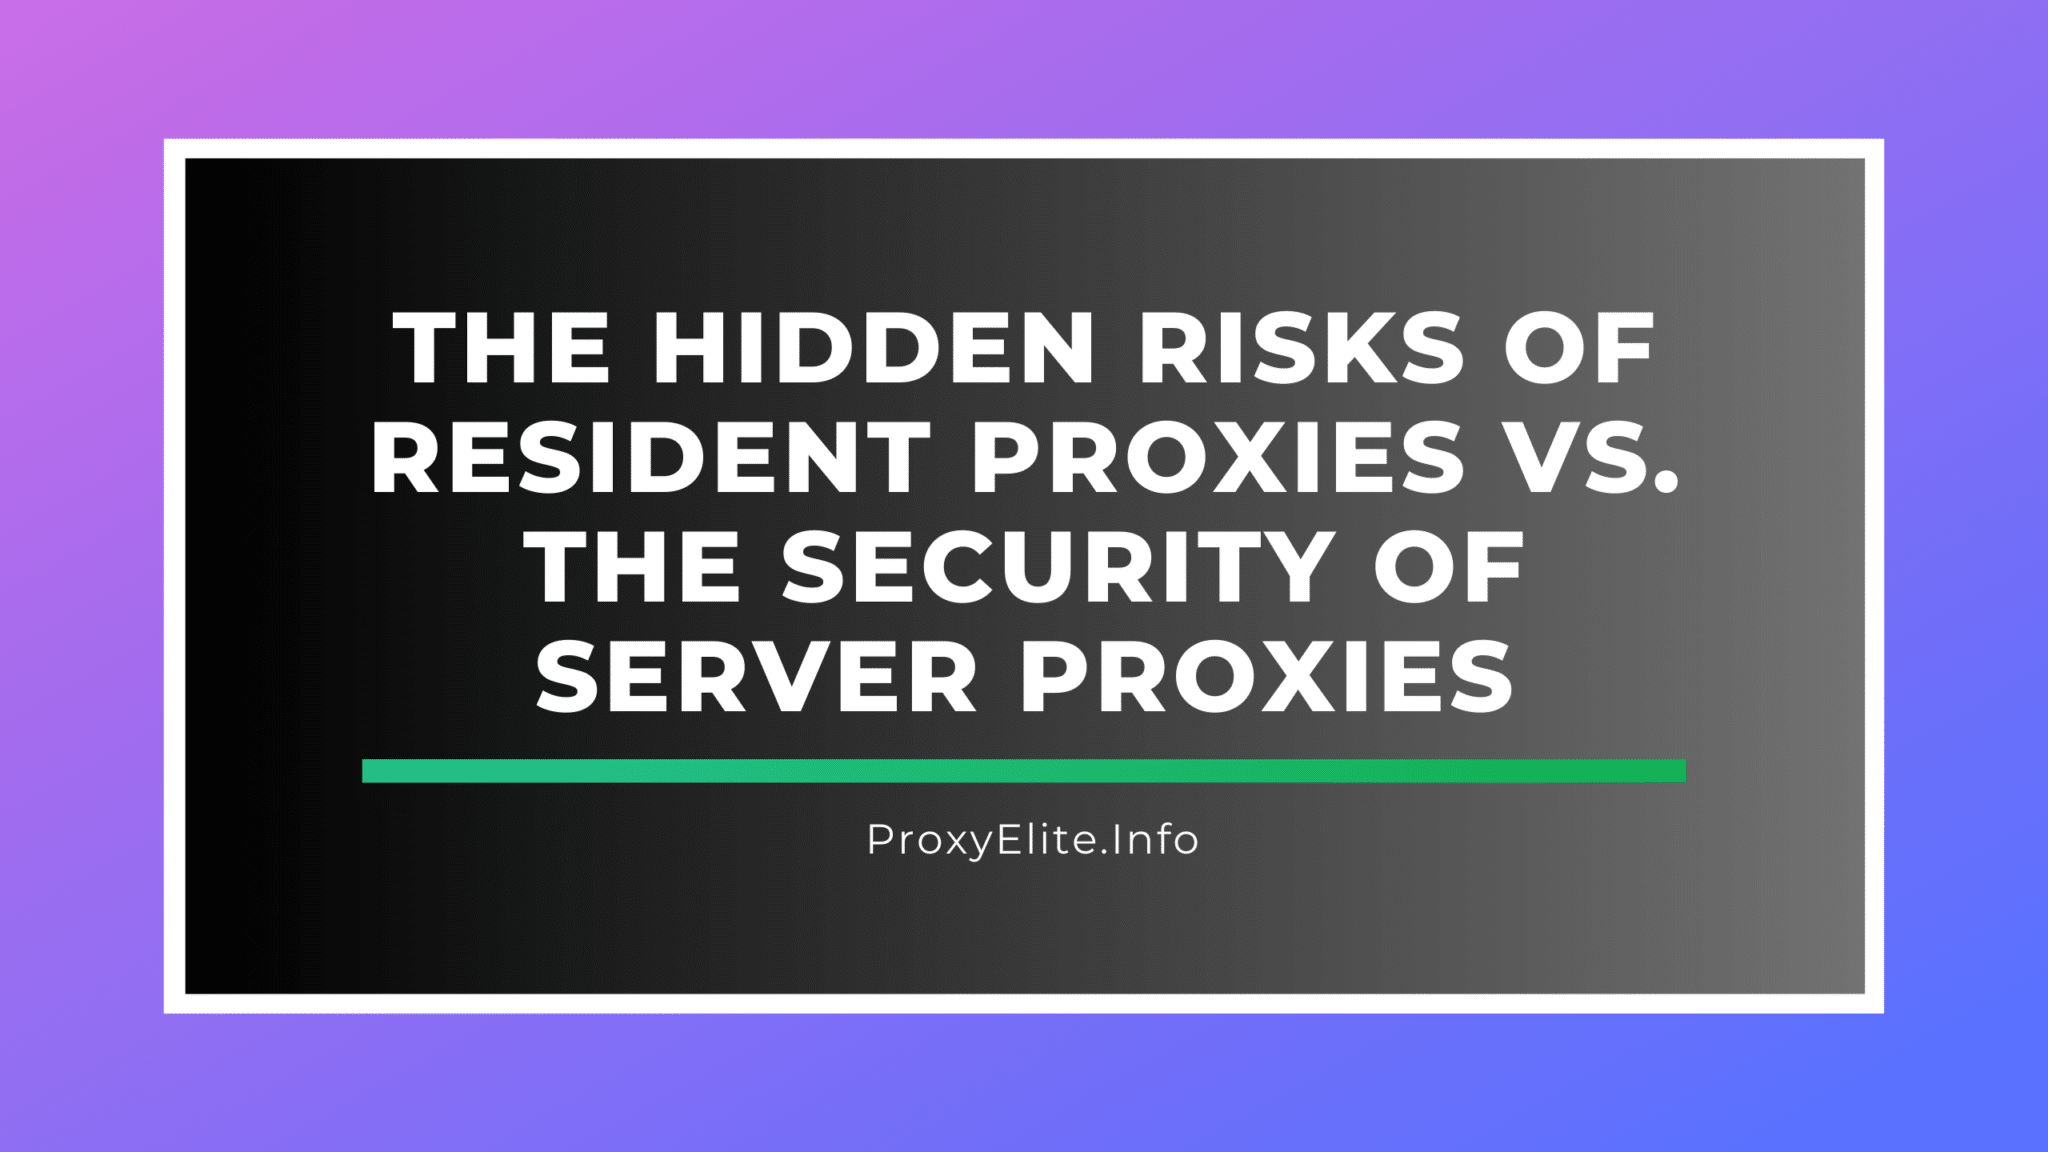 Os riscos ocultos dos proxies residentes versus a segurança dos proxies de servidor